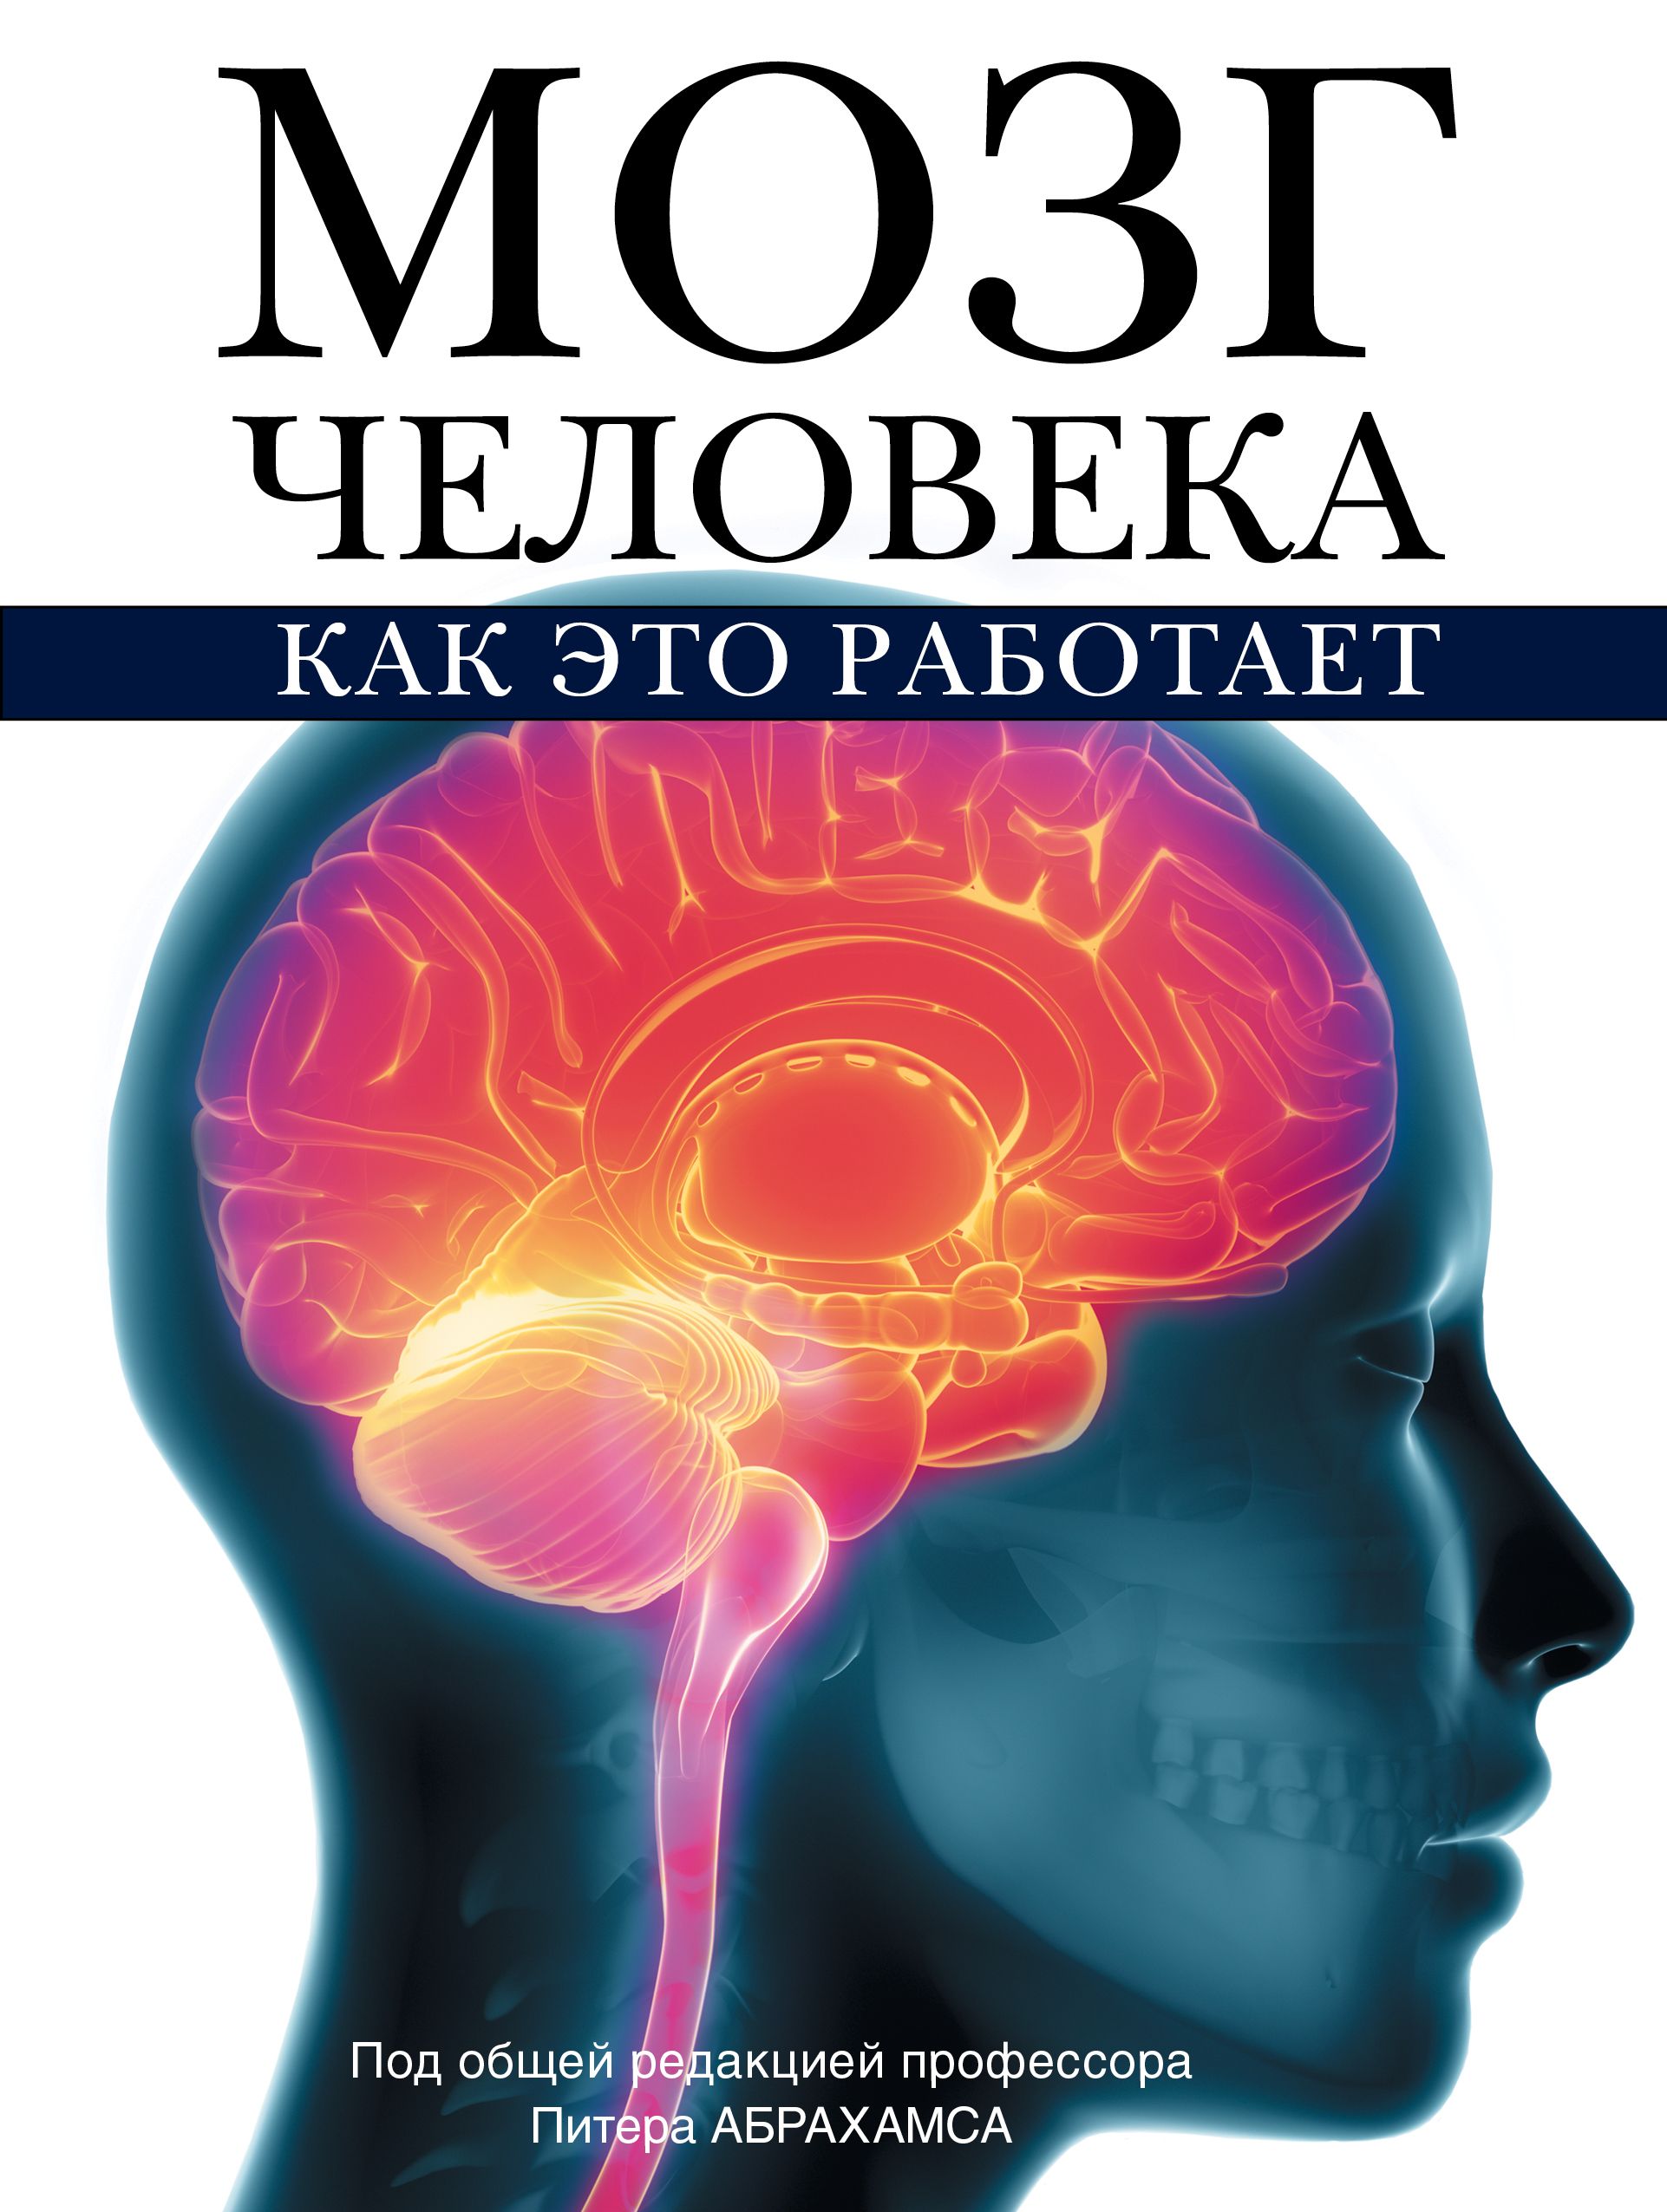 Книги о том как работать. Книга мозг. Книга про мозг человека. Мозг с книжкой.